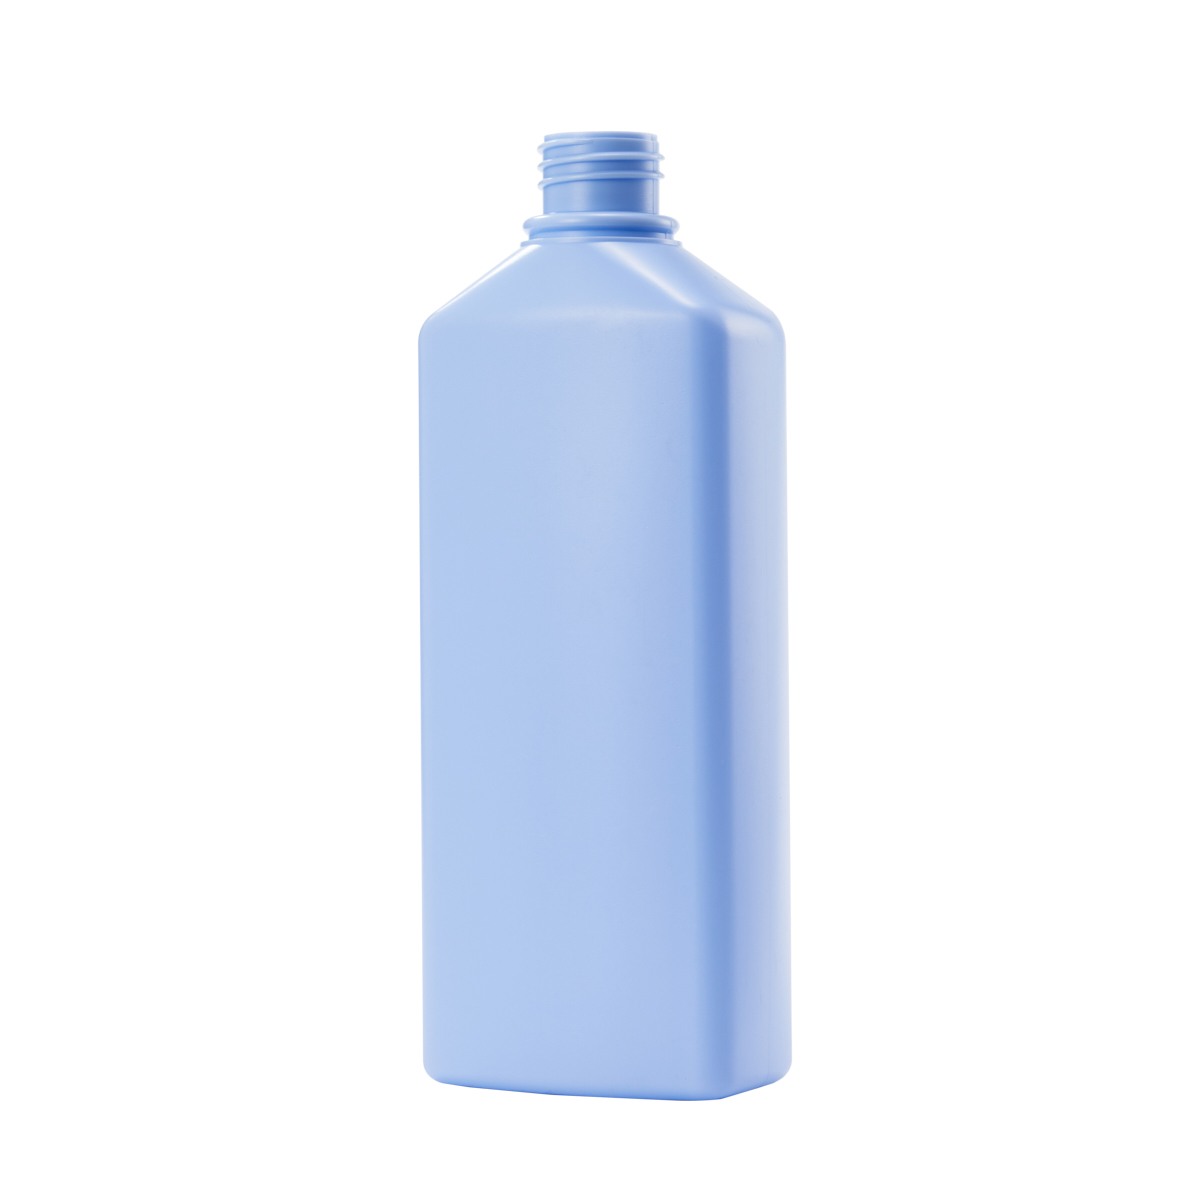 Gel Shampoo Pump Bottle